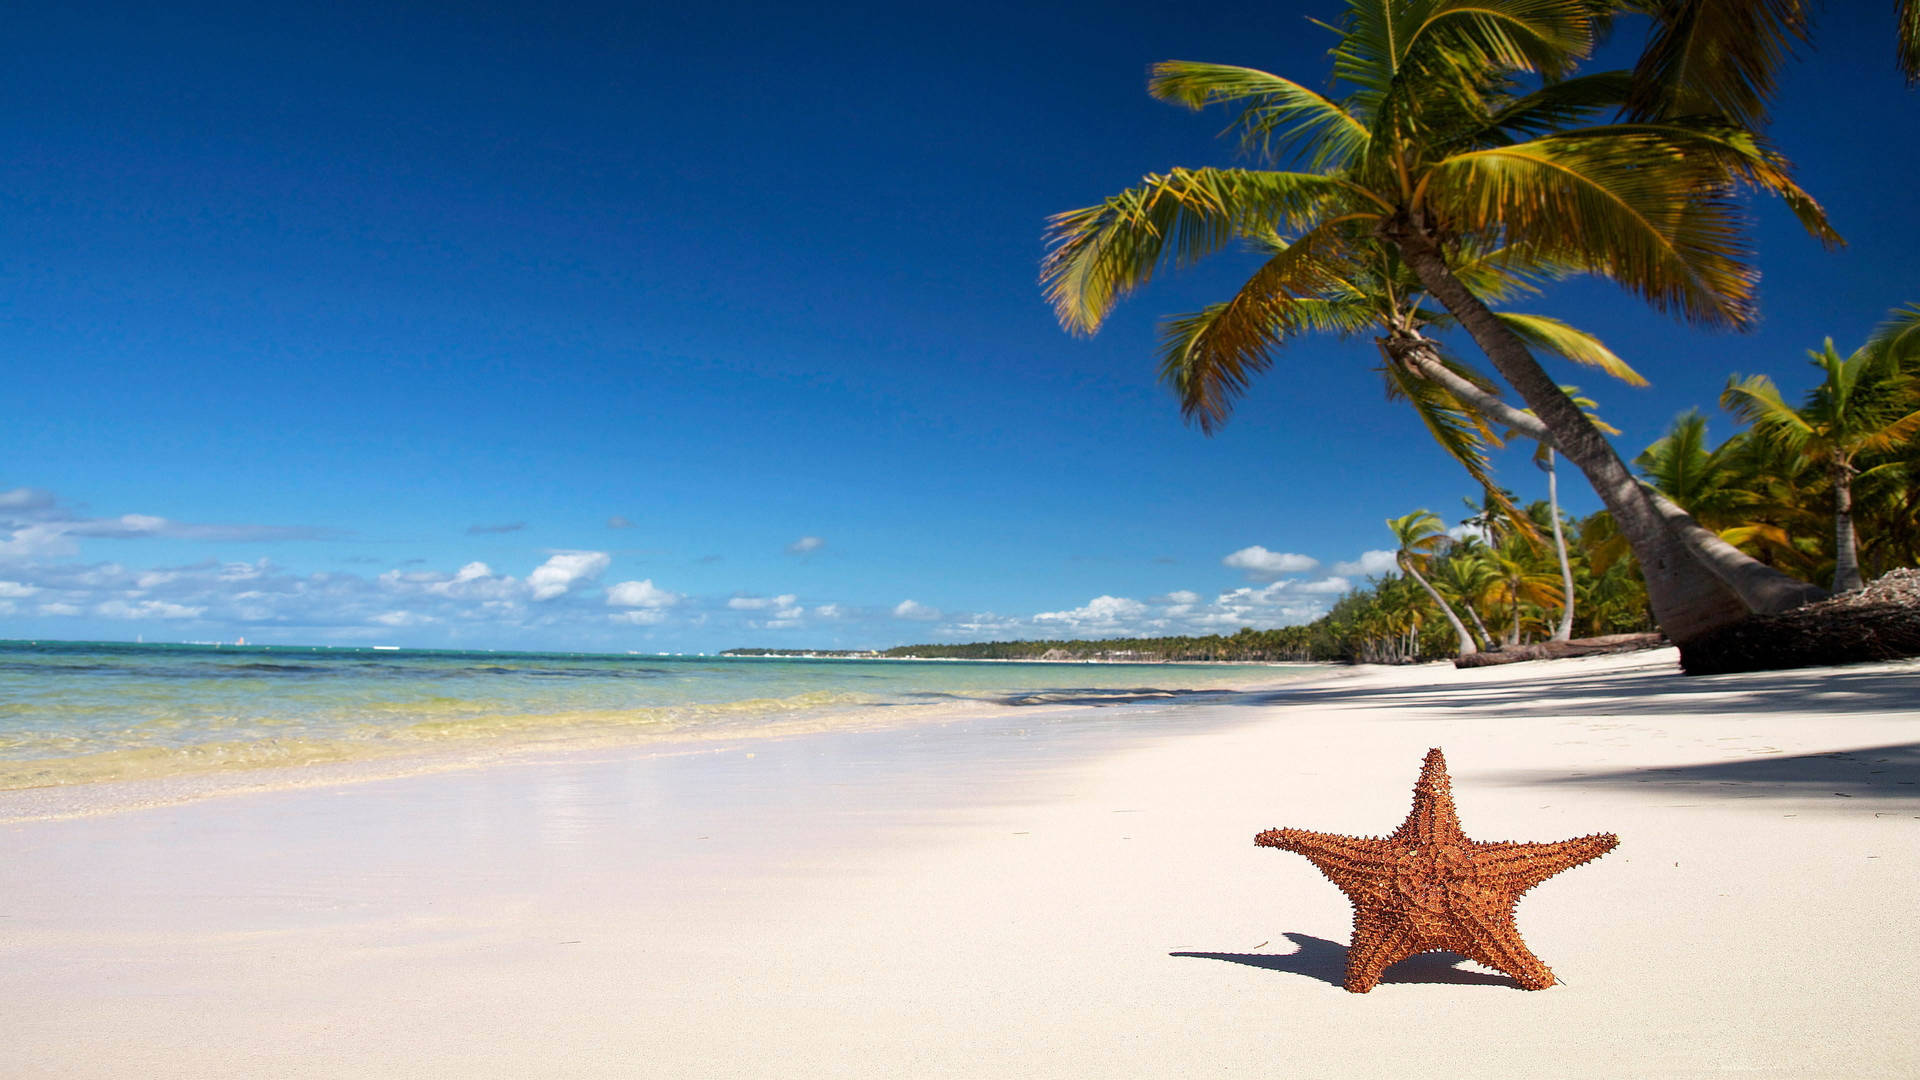 4k Beach With Starfish